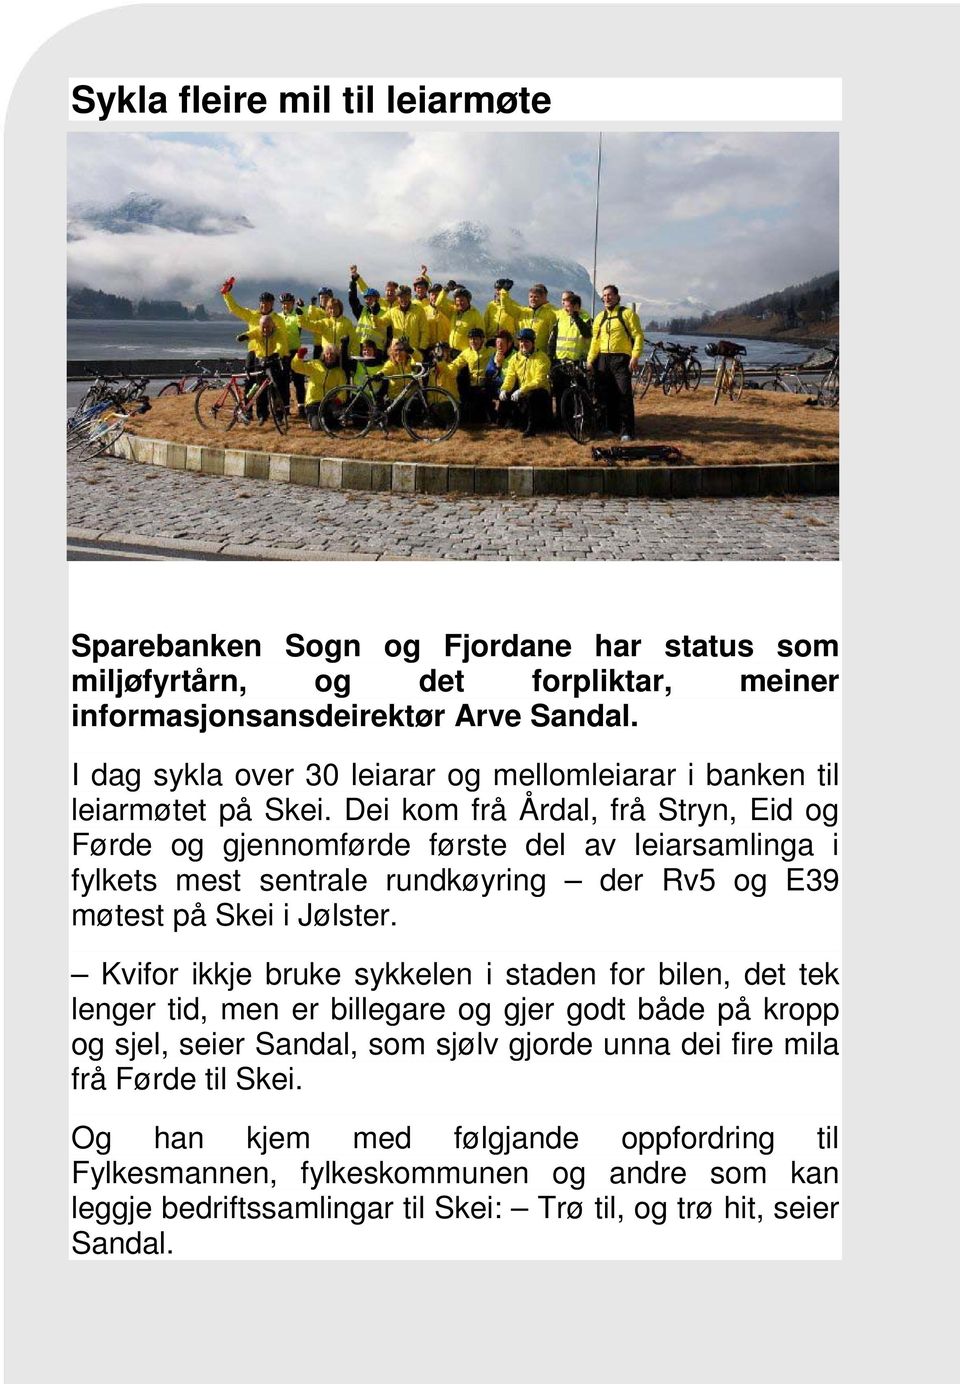 Dei kom frå Årdal, frå Stryn, Eid og Førde og gjennomførde første del av leiarsamlinga i fylkets mest sentrale rundkøyring der Rv5 og E39 møtest på Skei i Jølster.